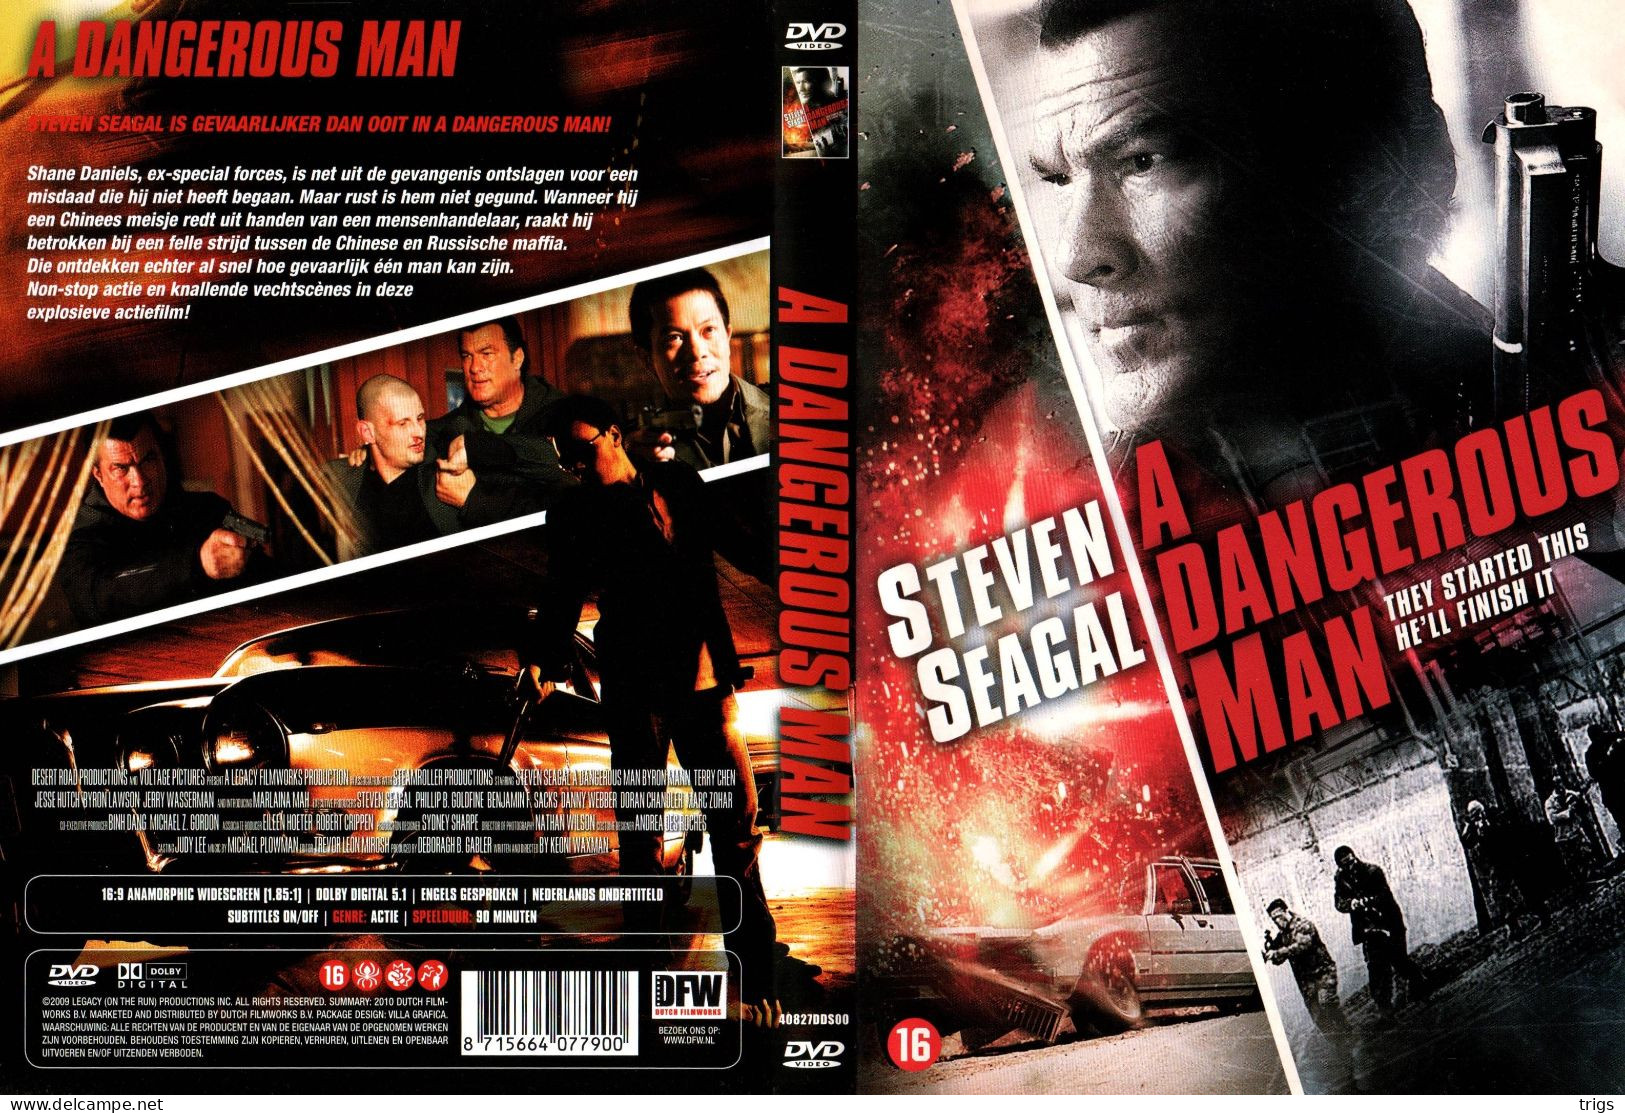 DVD - A Dangerous Man - Acción, Aventura